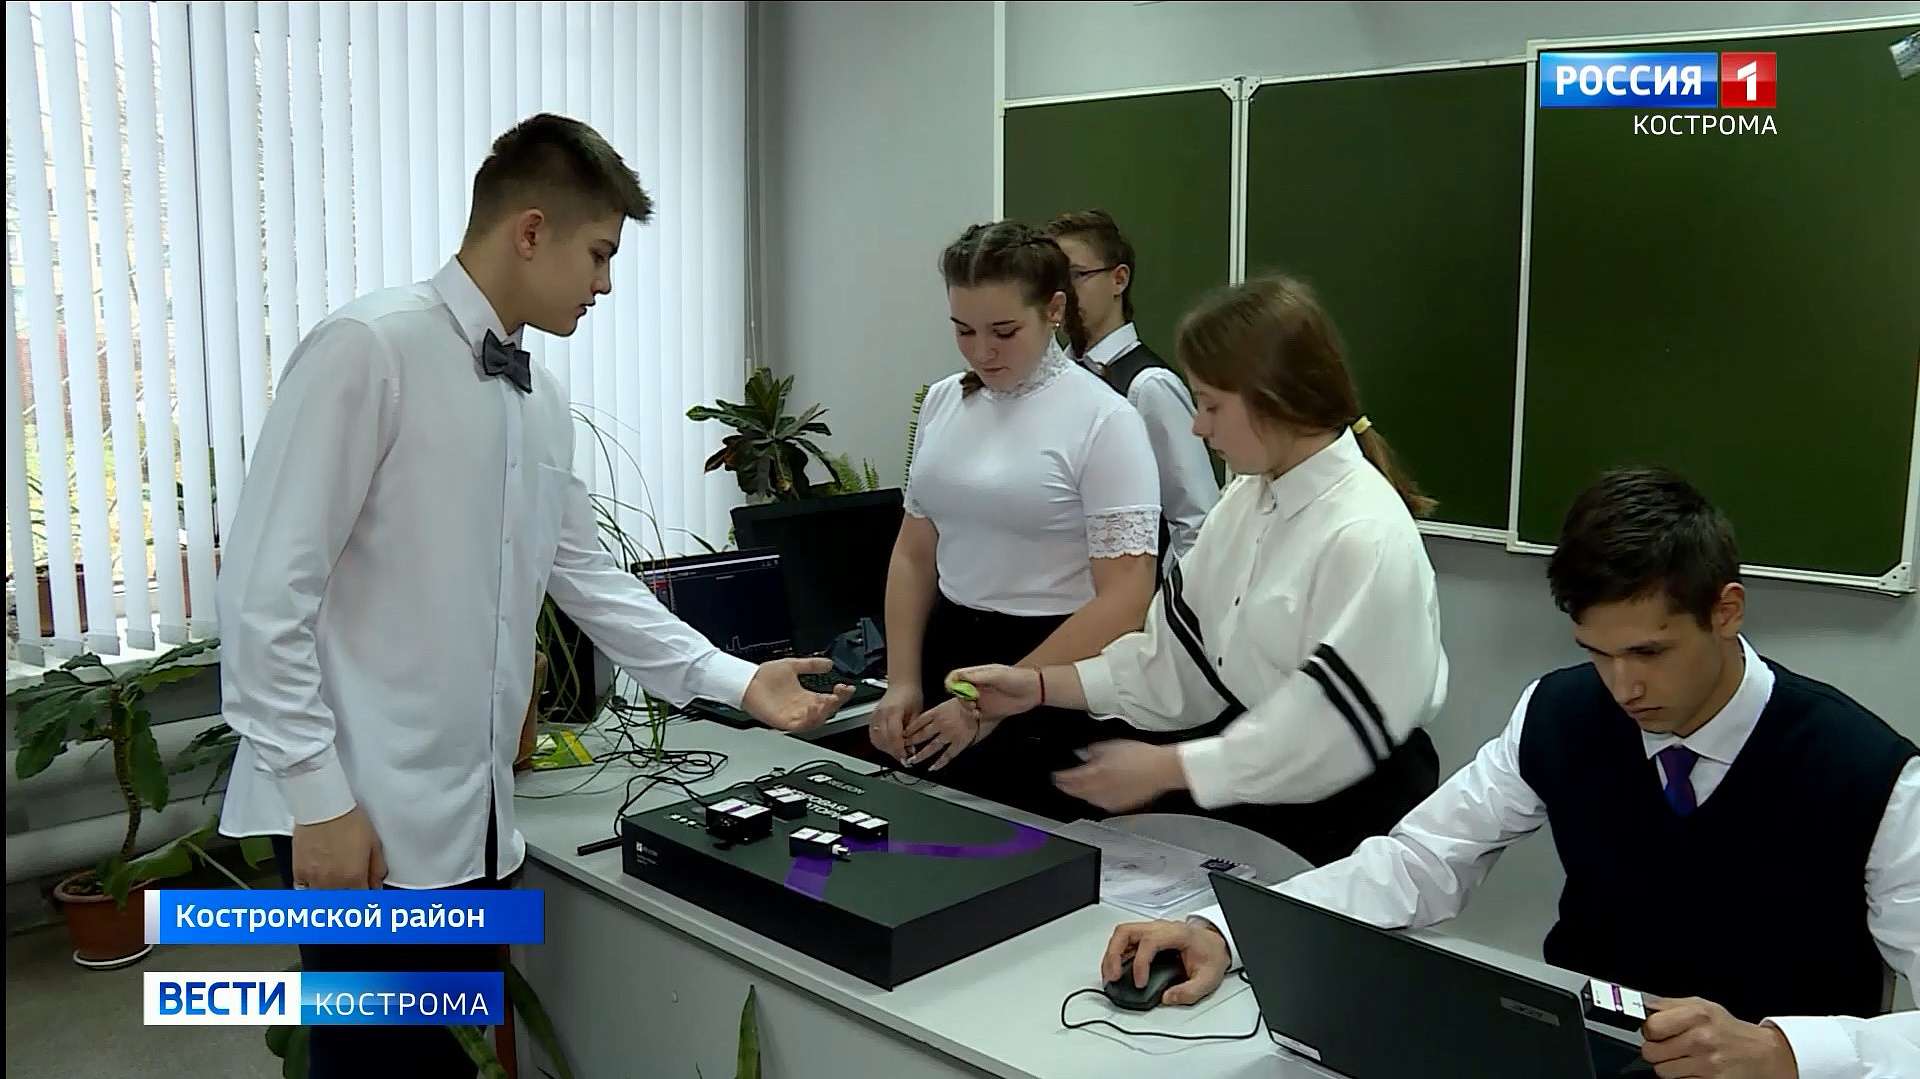 Роботы старшеклассников преобразили учёбу в школе под Костромой